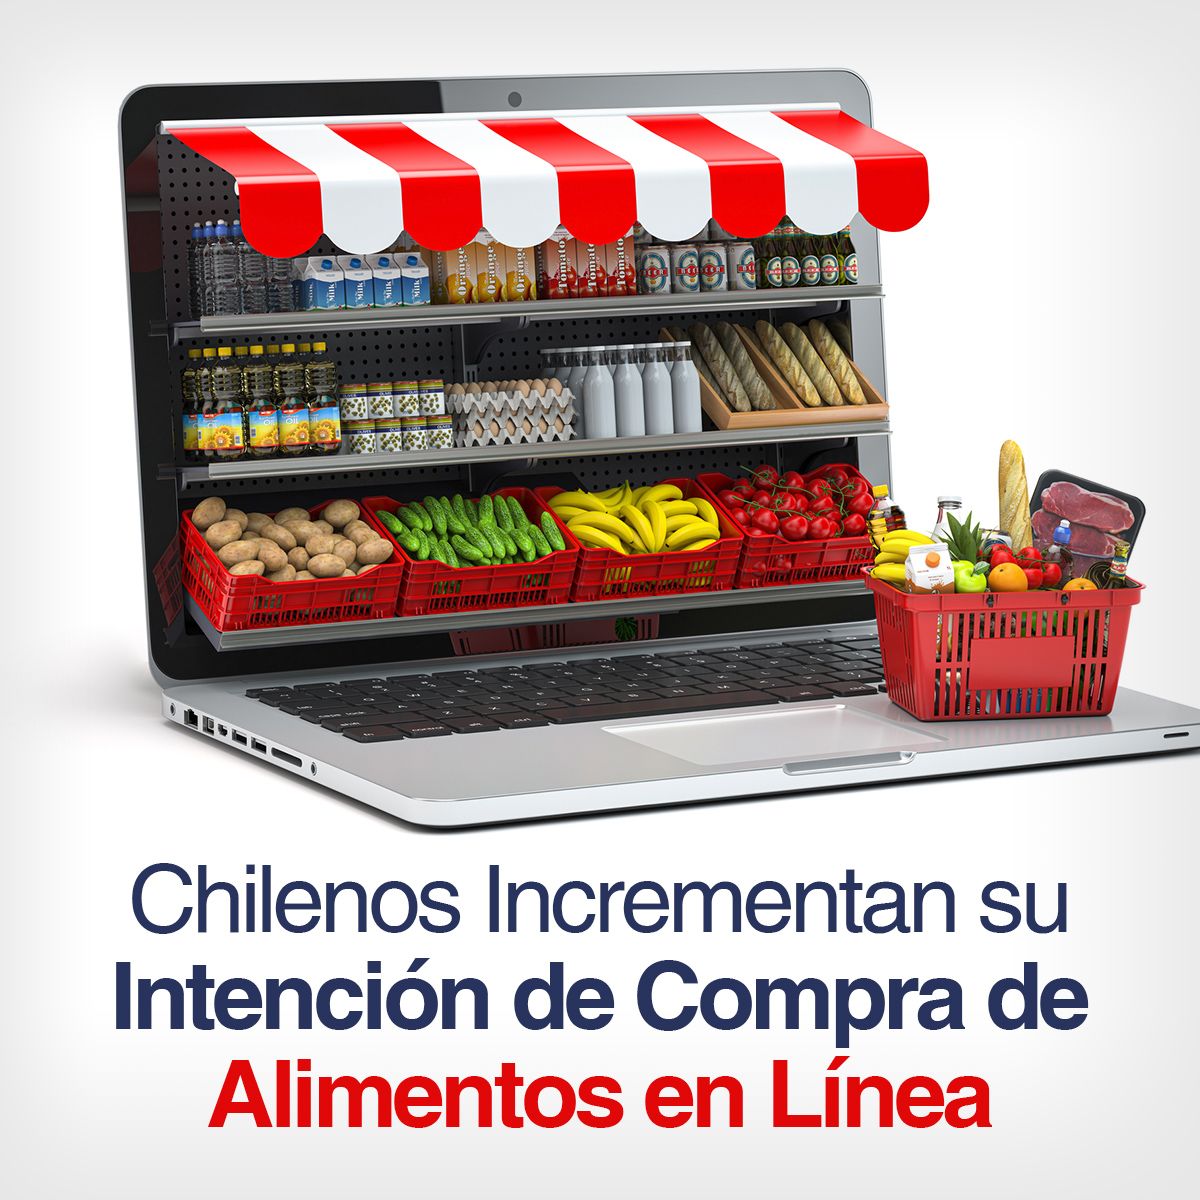 Chilenos Incrementan su Intención de Compra de Alimentos en Línea